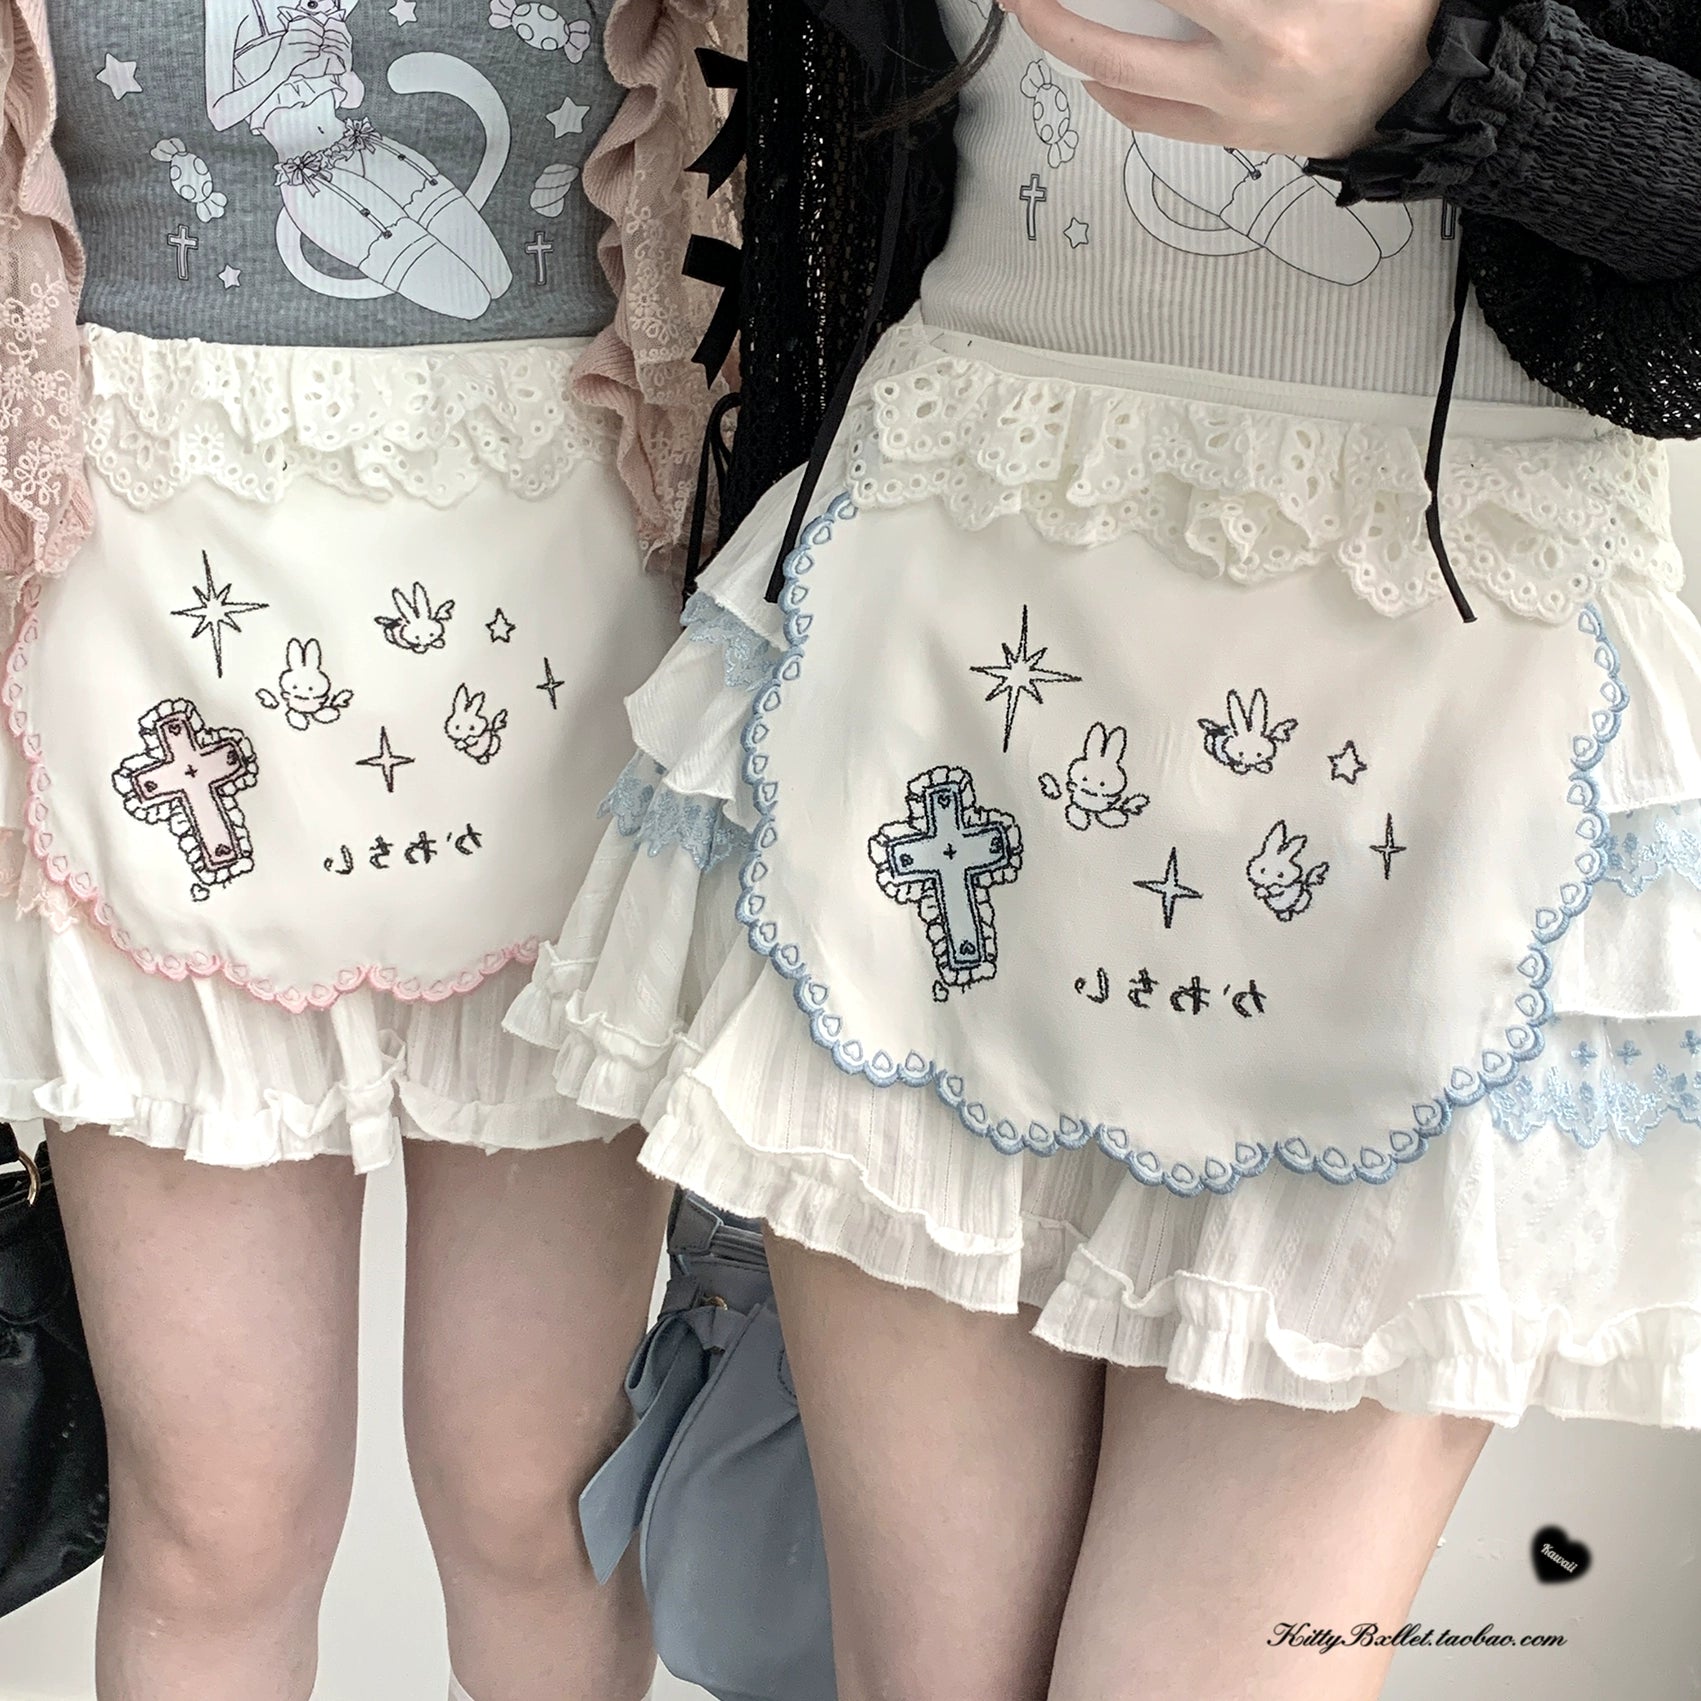 Ryousangata Skirt Lace Cake Skirt And Apron Set 36790:536166